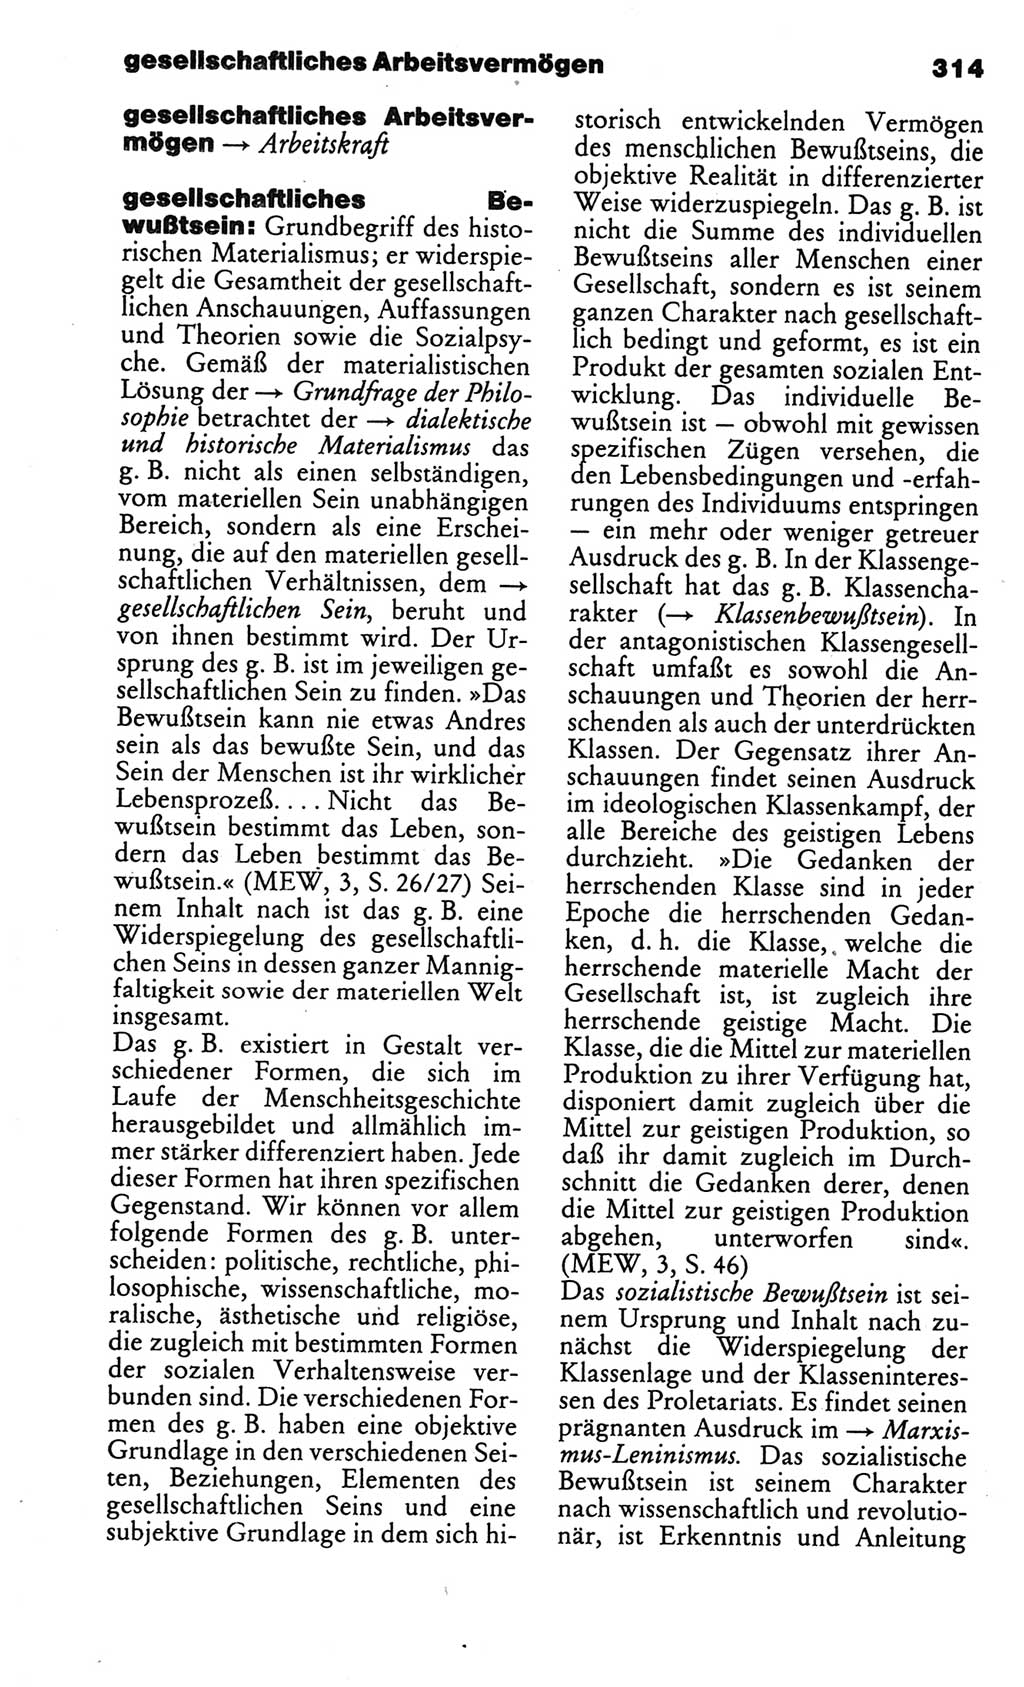 Kleines politisches Wörterbuch [Deutsche Demokratische Republik (DDR)] 1986, Seite 314 (Kl. pol. Wb. DDR 1986, S. 314)